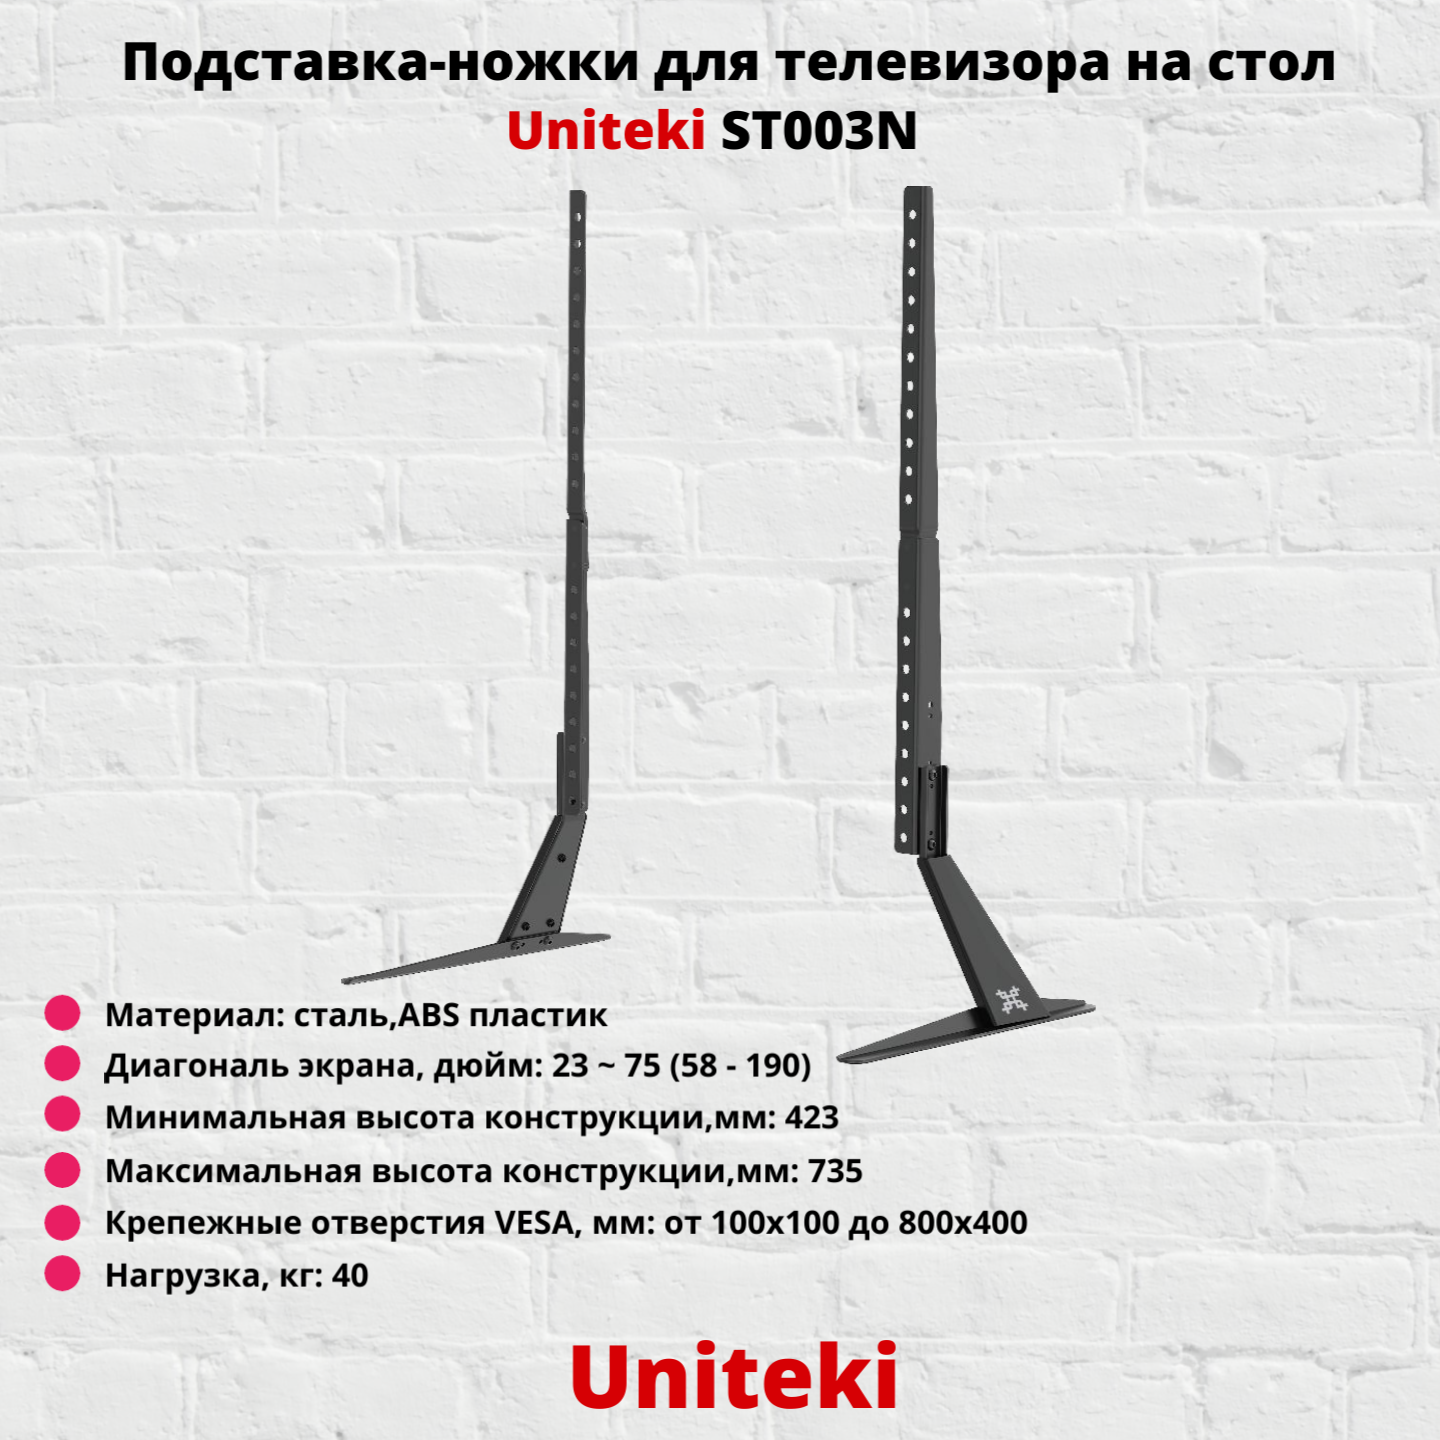 Подставка-ножки для телевизора настольная с диагональю 23"-75" UniTeki ST003N черный